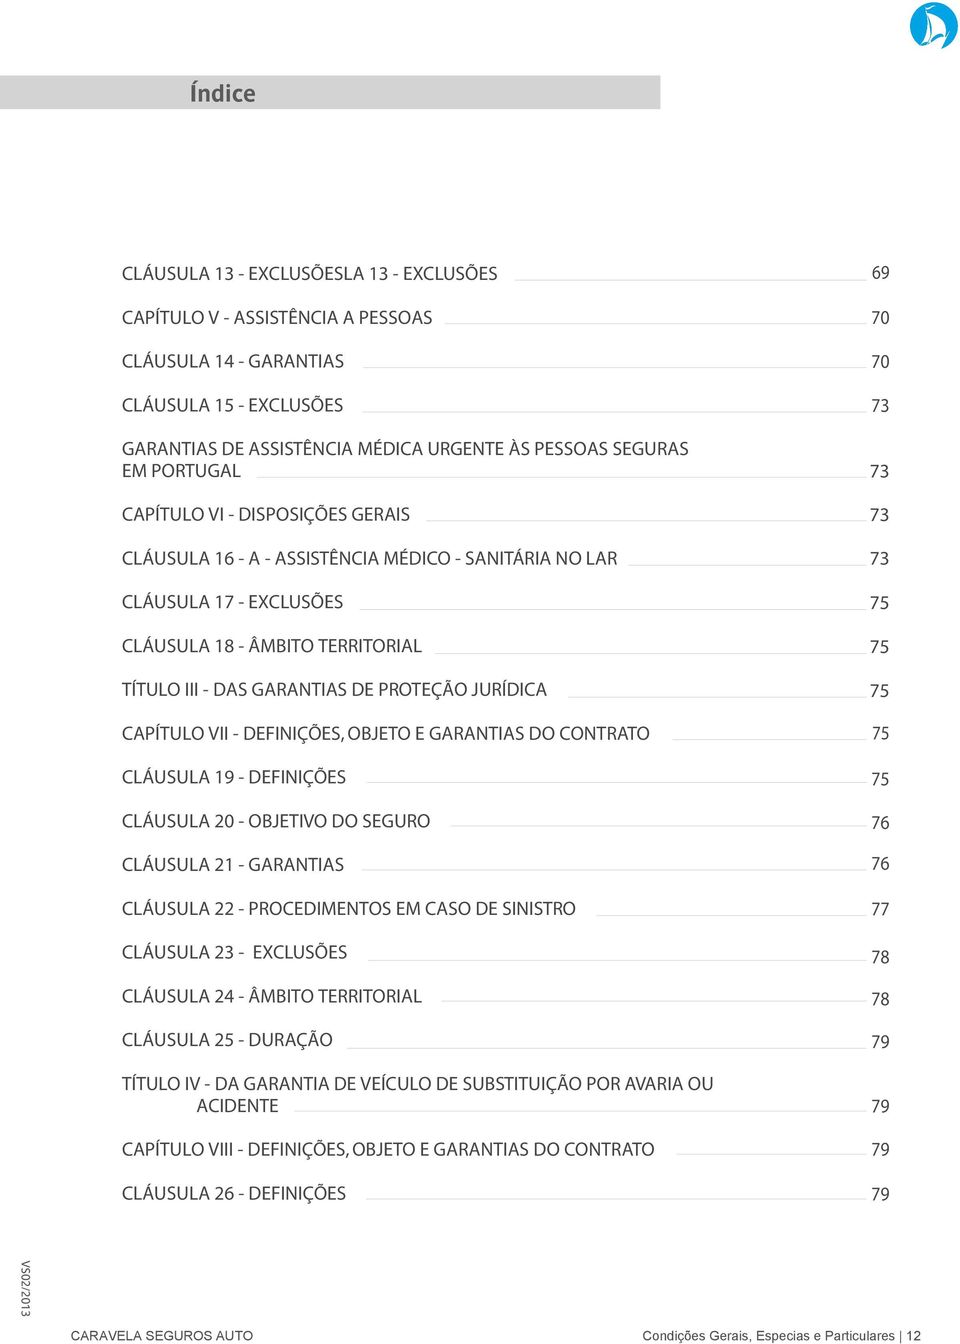 JURÍDICA CAPÍTULO VII - DEFINIÇÕES, OBJETO E GARANTIAS DO CONTRATO CLÁUSULA 19 - DEFINIÇÕES CLÁUSULA 20 - OBJETIVO DO SEGURO CLÁUSULA 21 - GARANTIAS CLÁUSULA 22 - PROCEDIMENTOS EM CASO DE SINISTRO